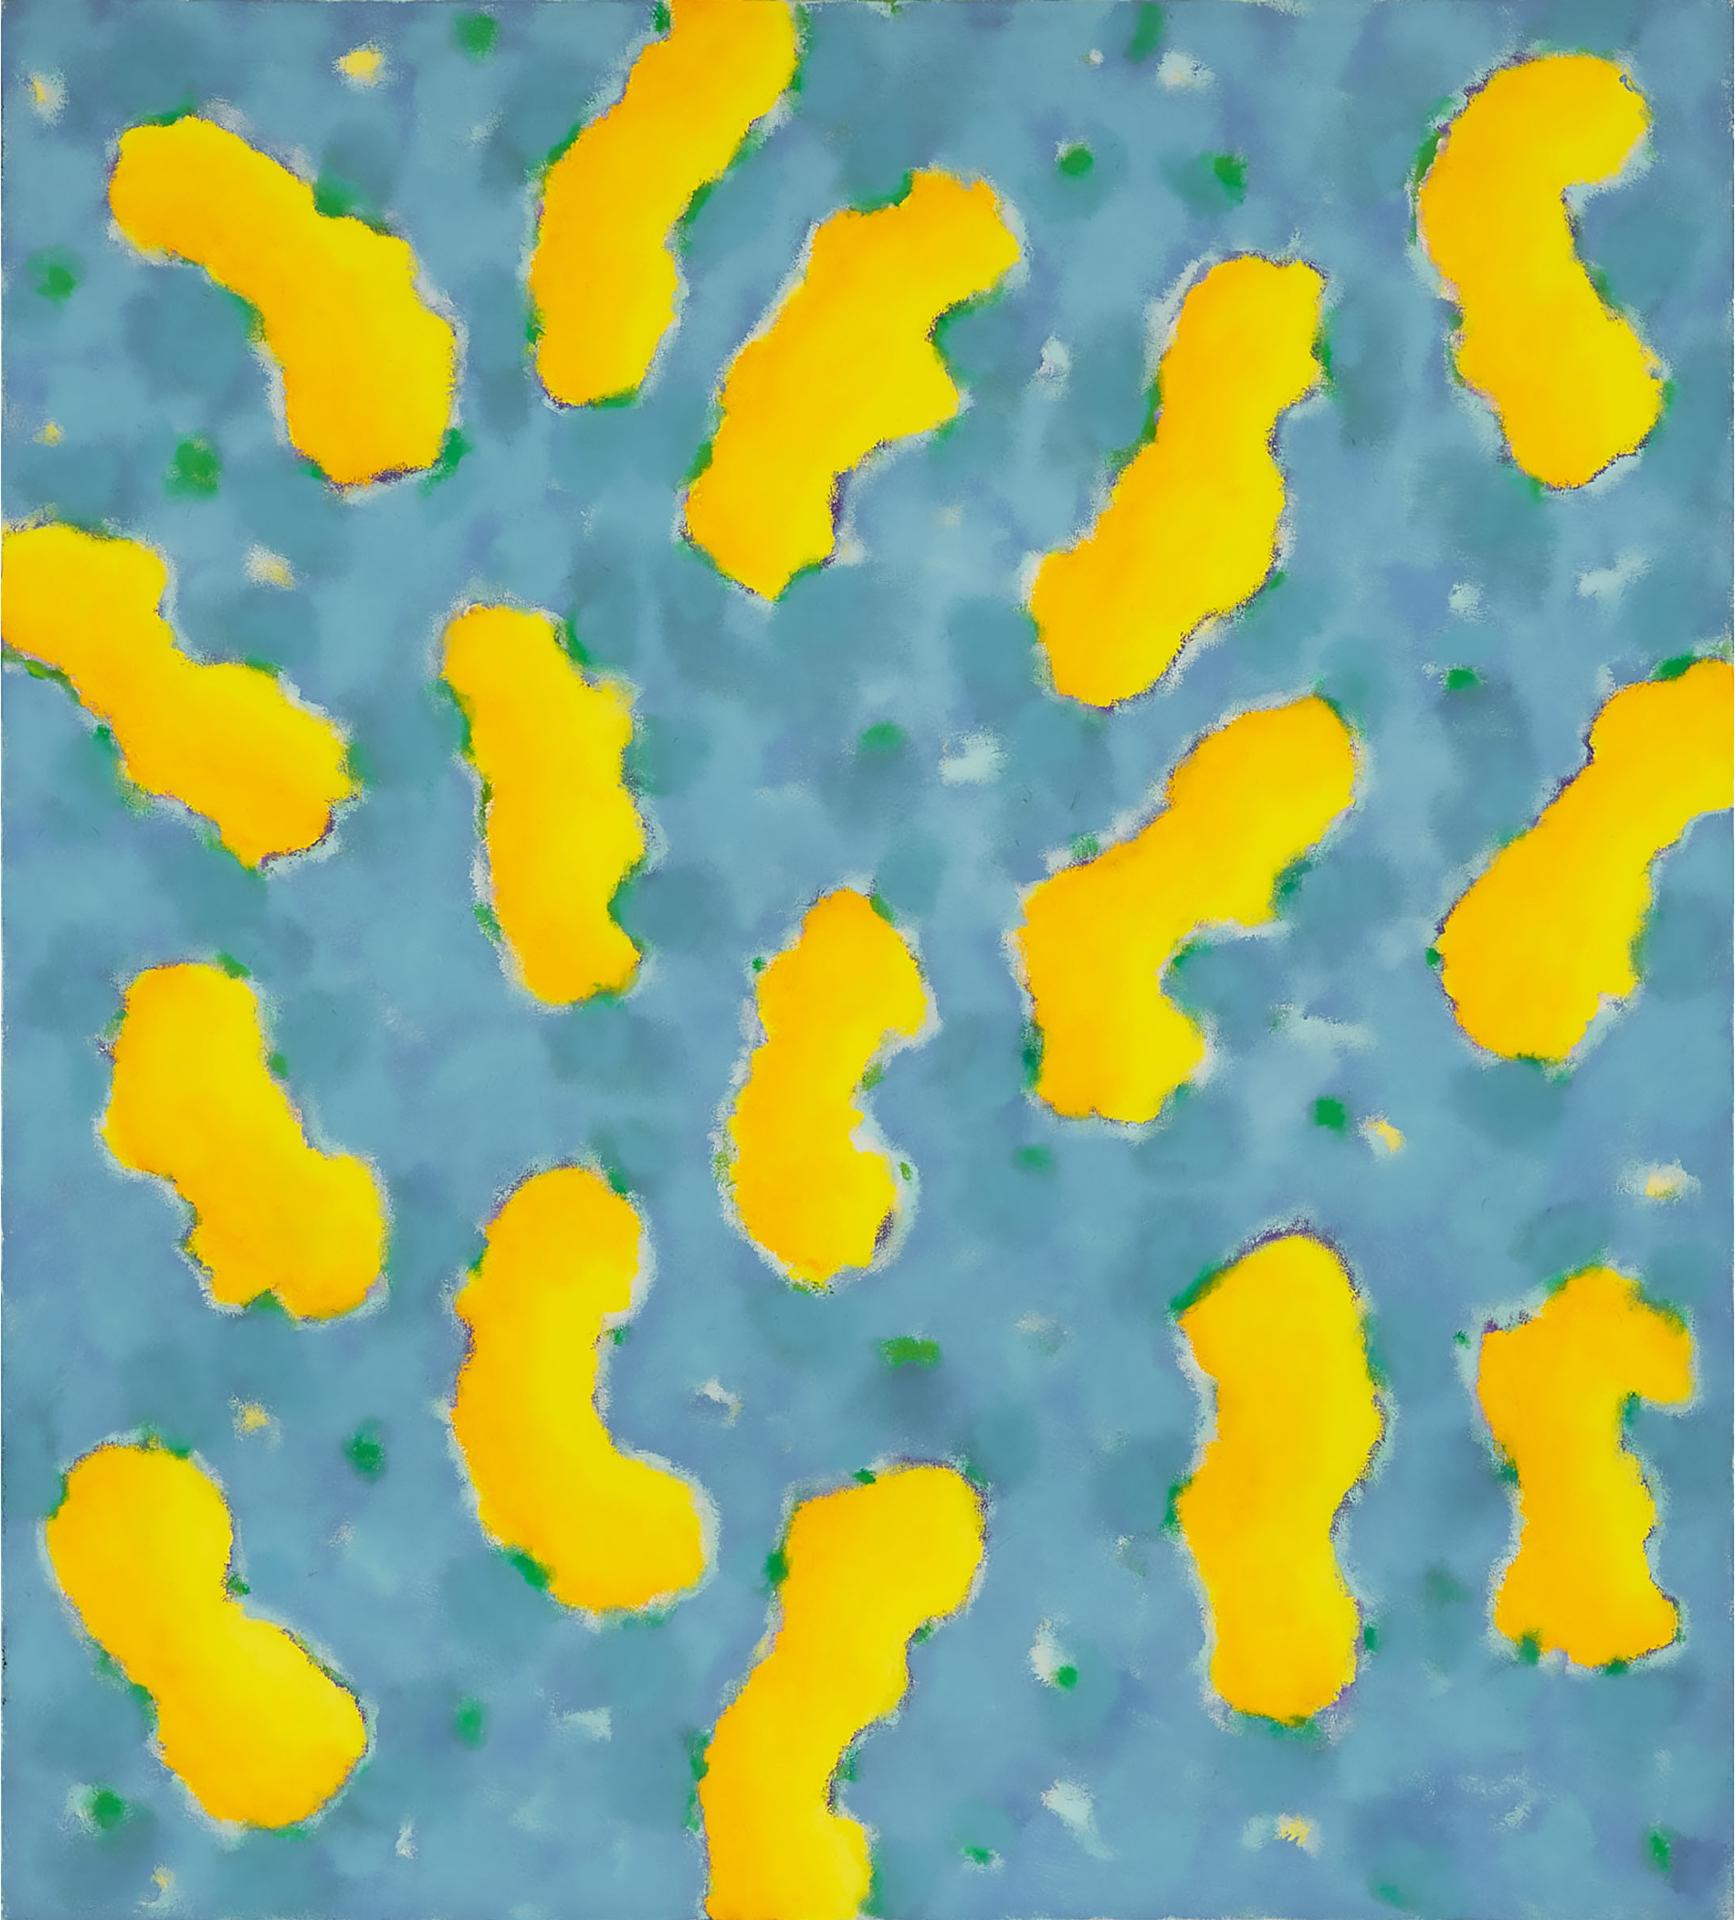 Gershon Iskowitz (1921-1988) - Yellow-Blue A, 1980